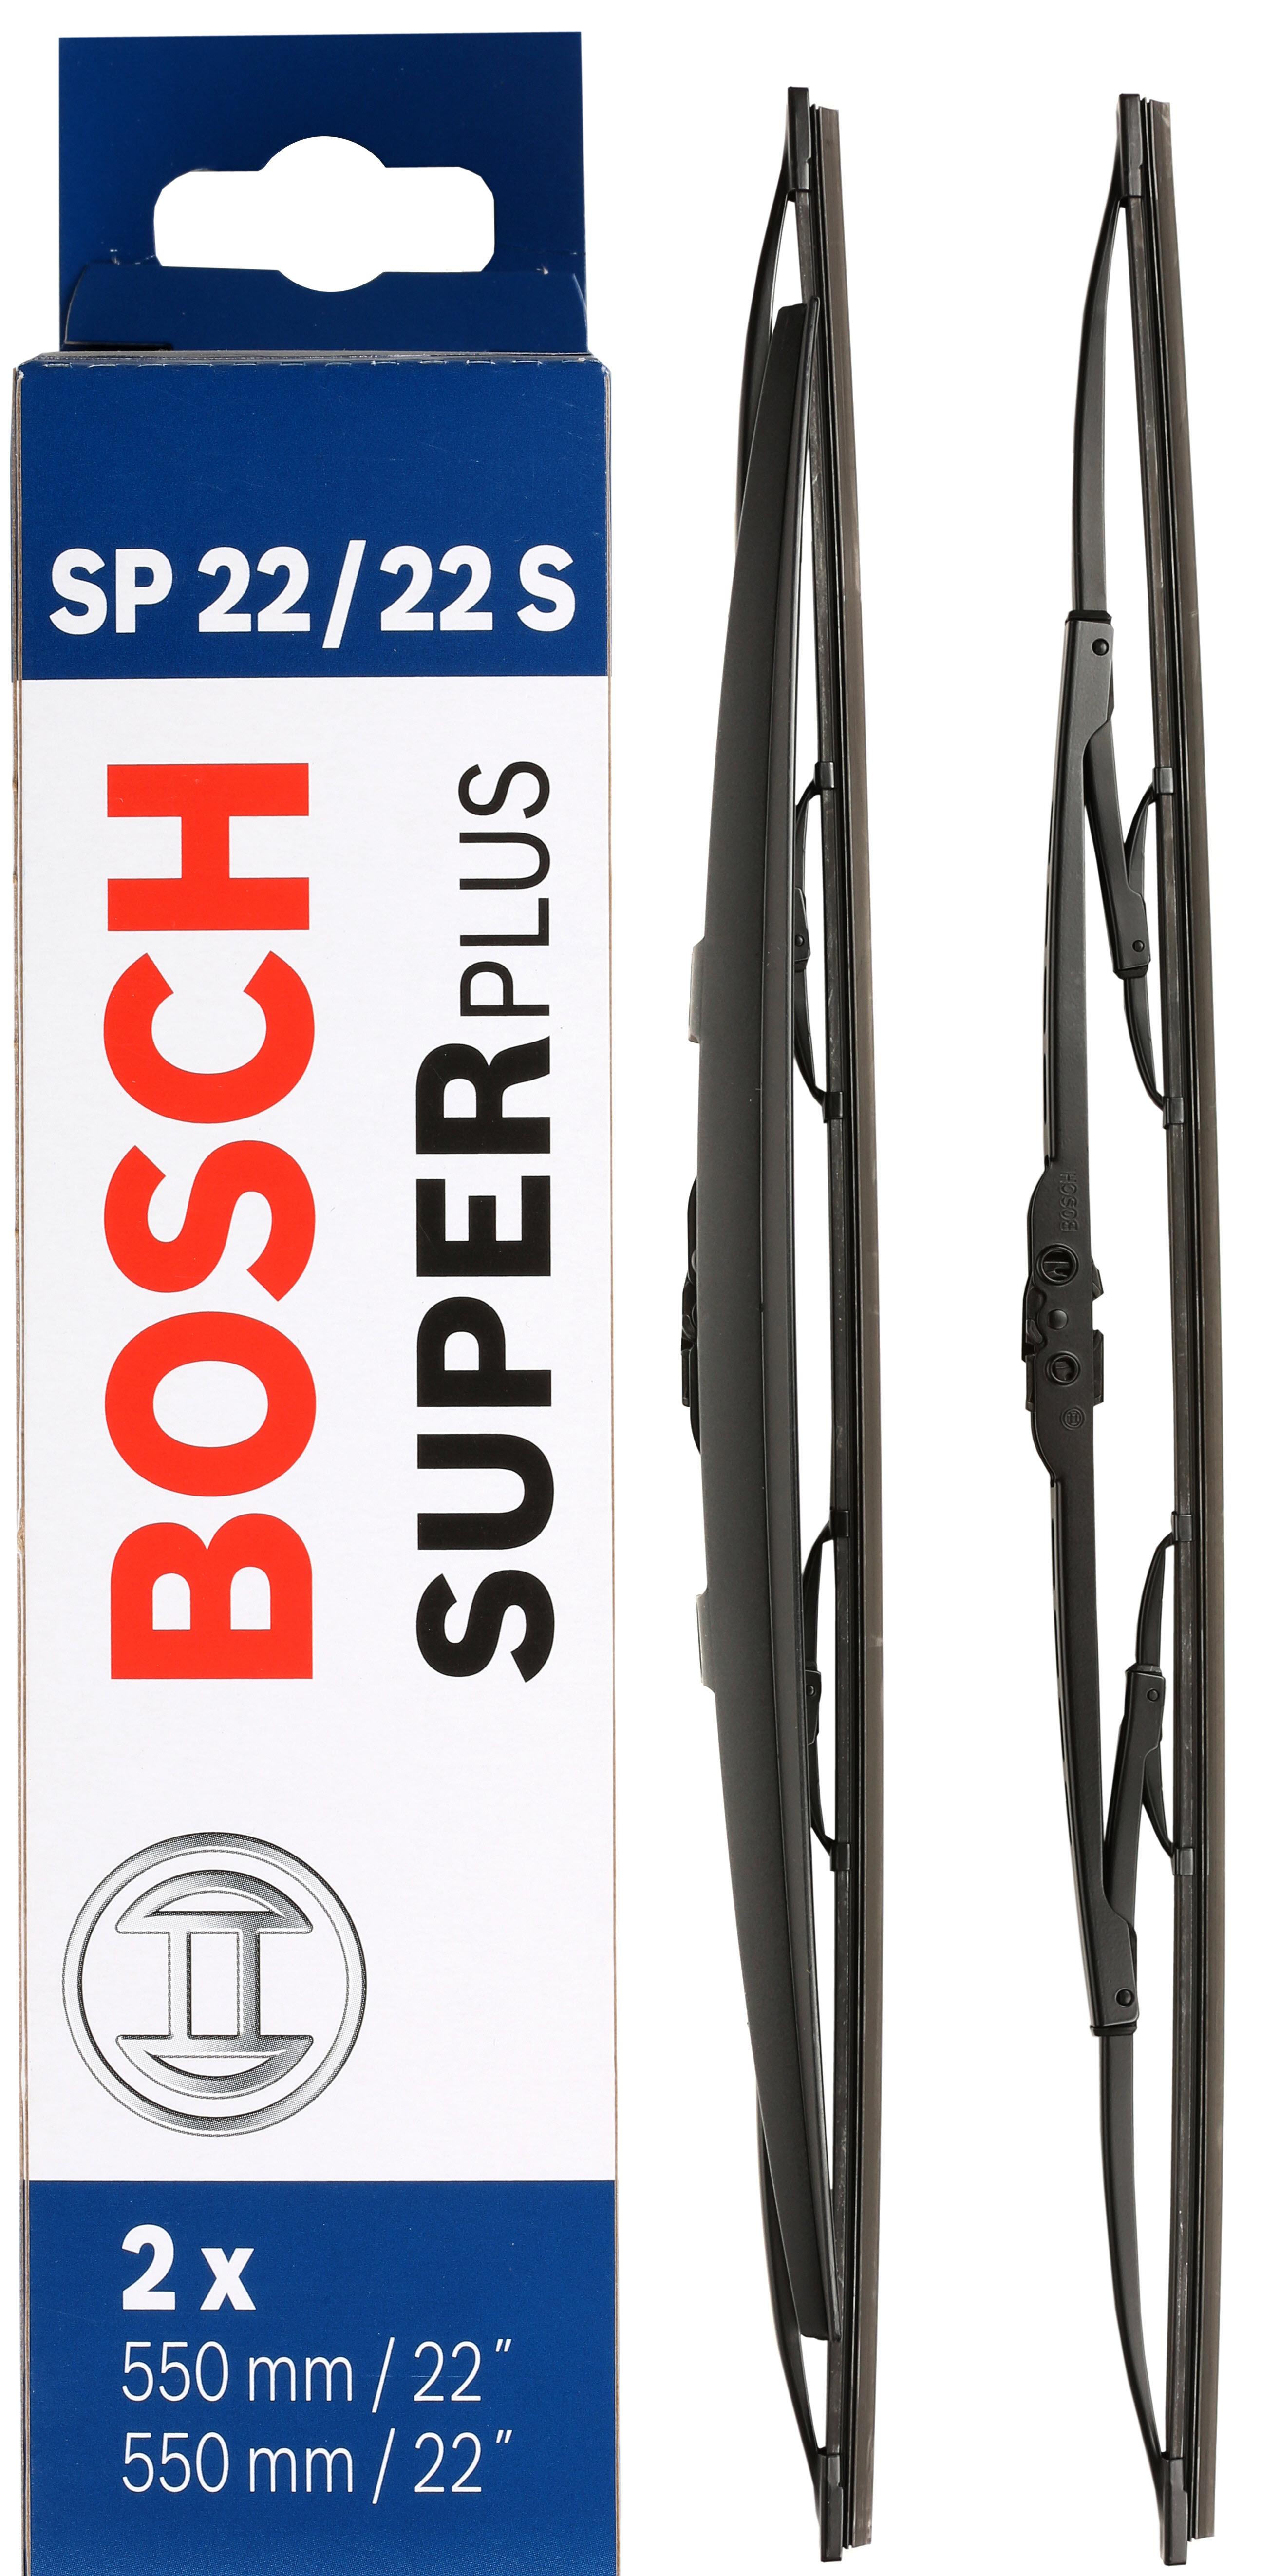 Bosch Sp22/22S Wiper Blades - Front Pair